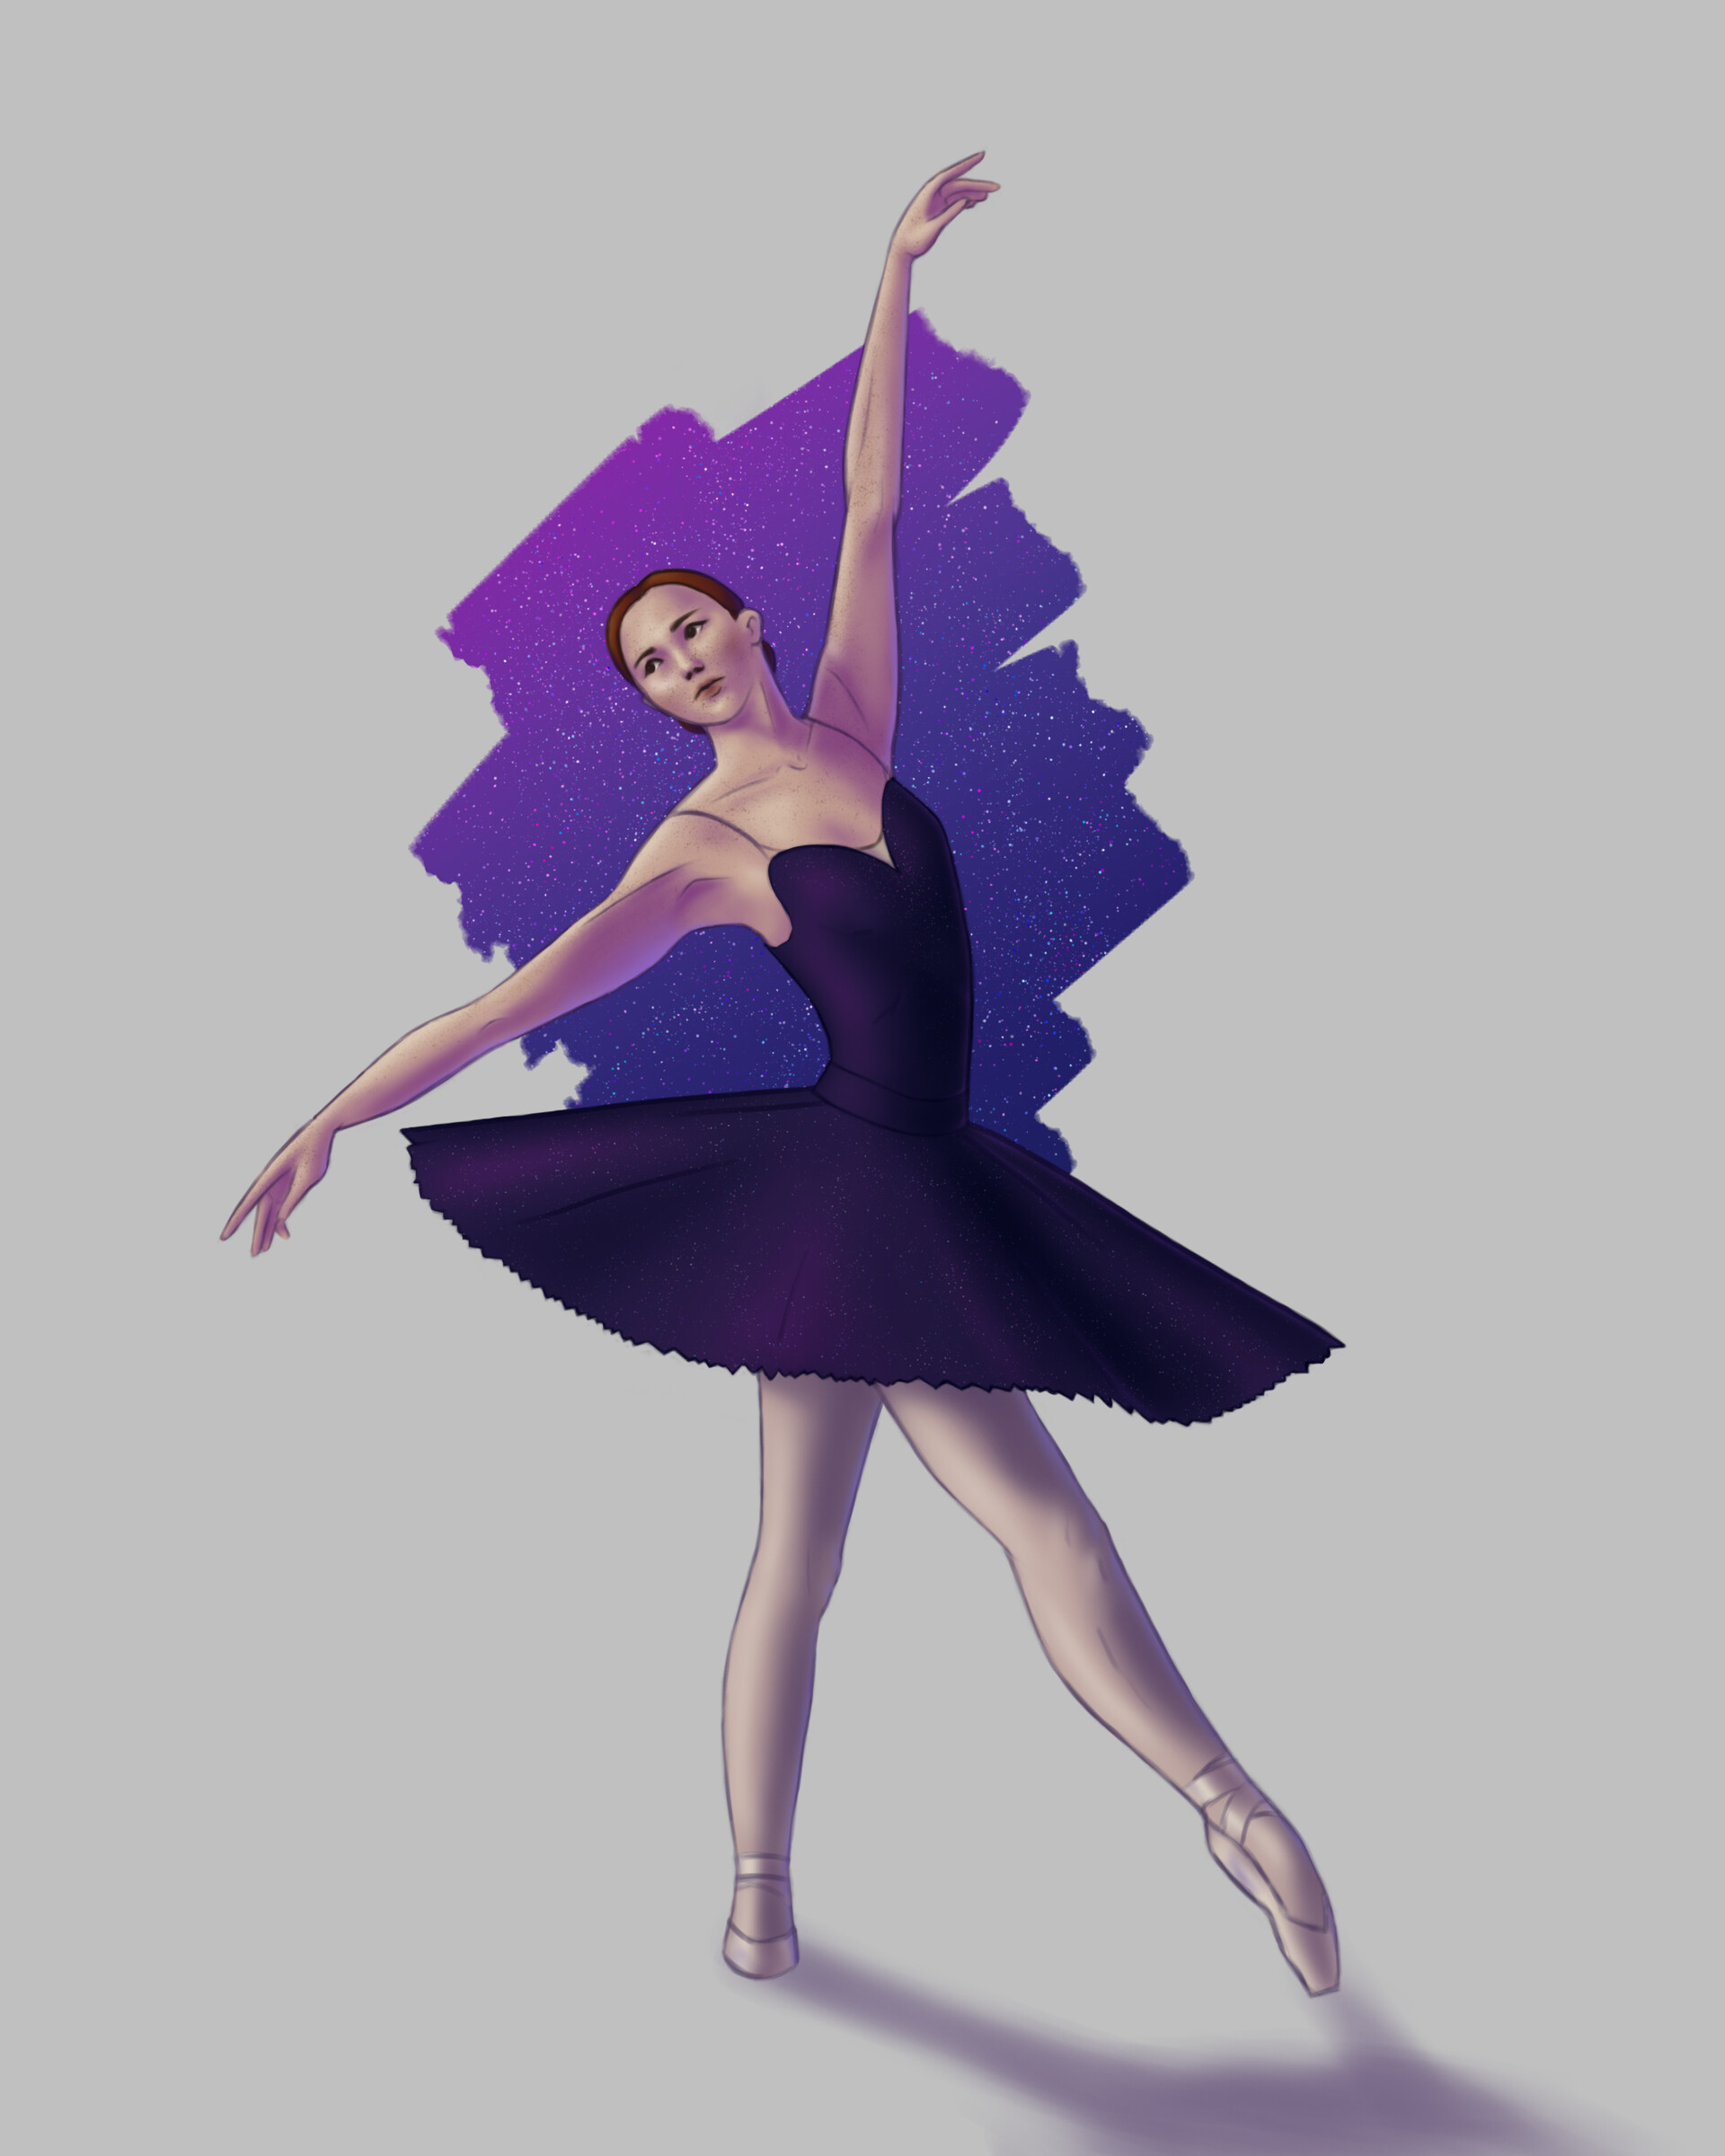 ArtStation - Ballerina in a purple dress